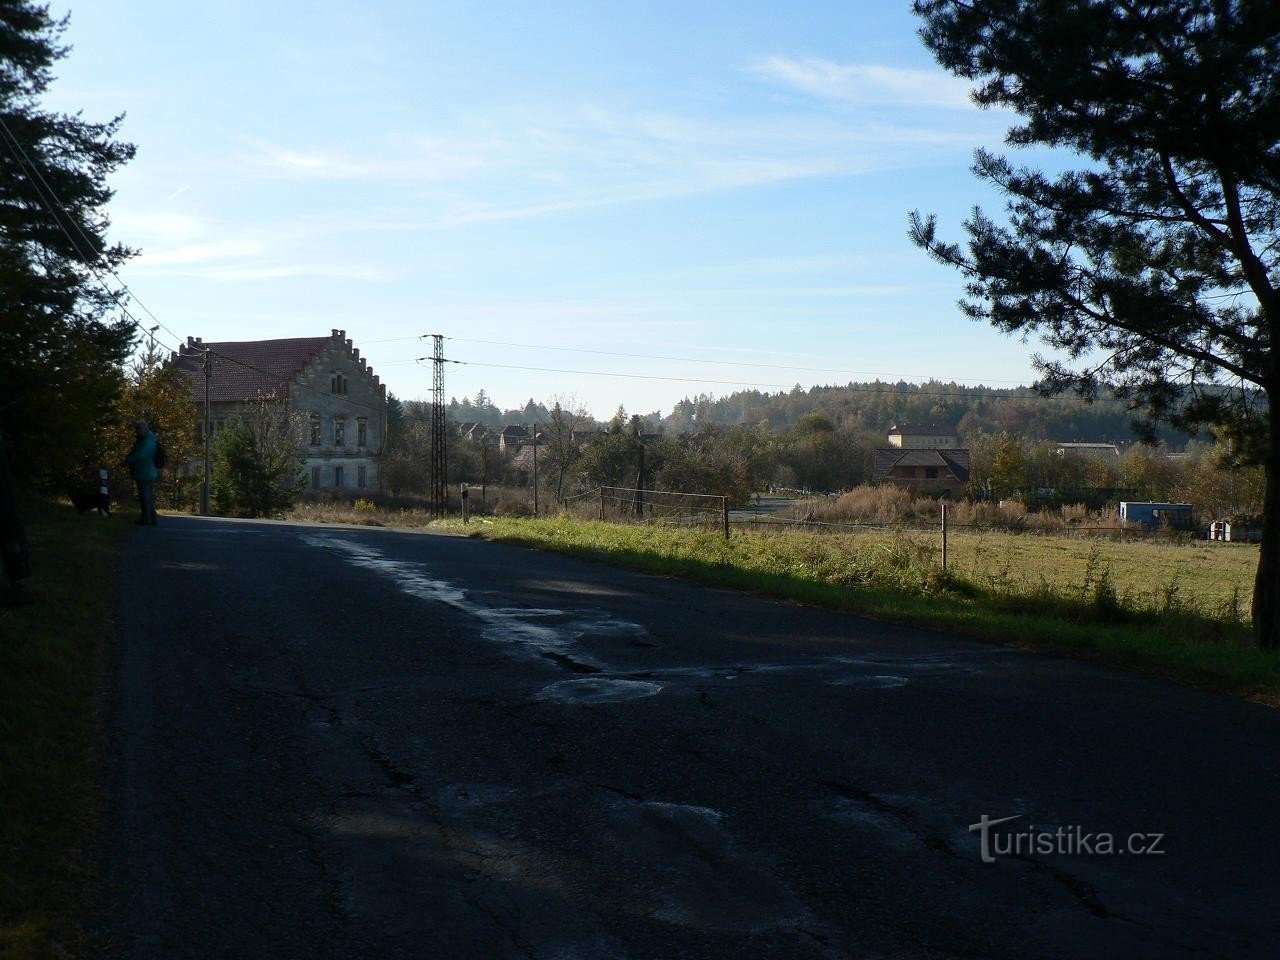 Pačejov, casa nos arredores da aldeia